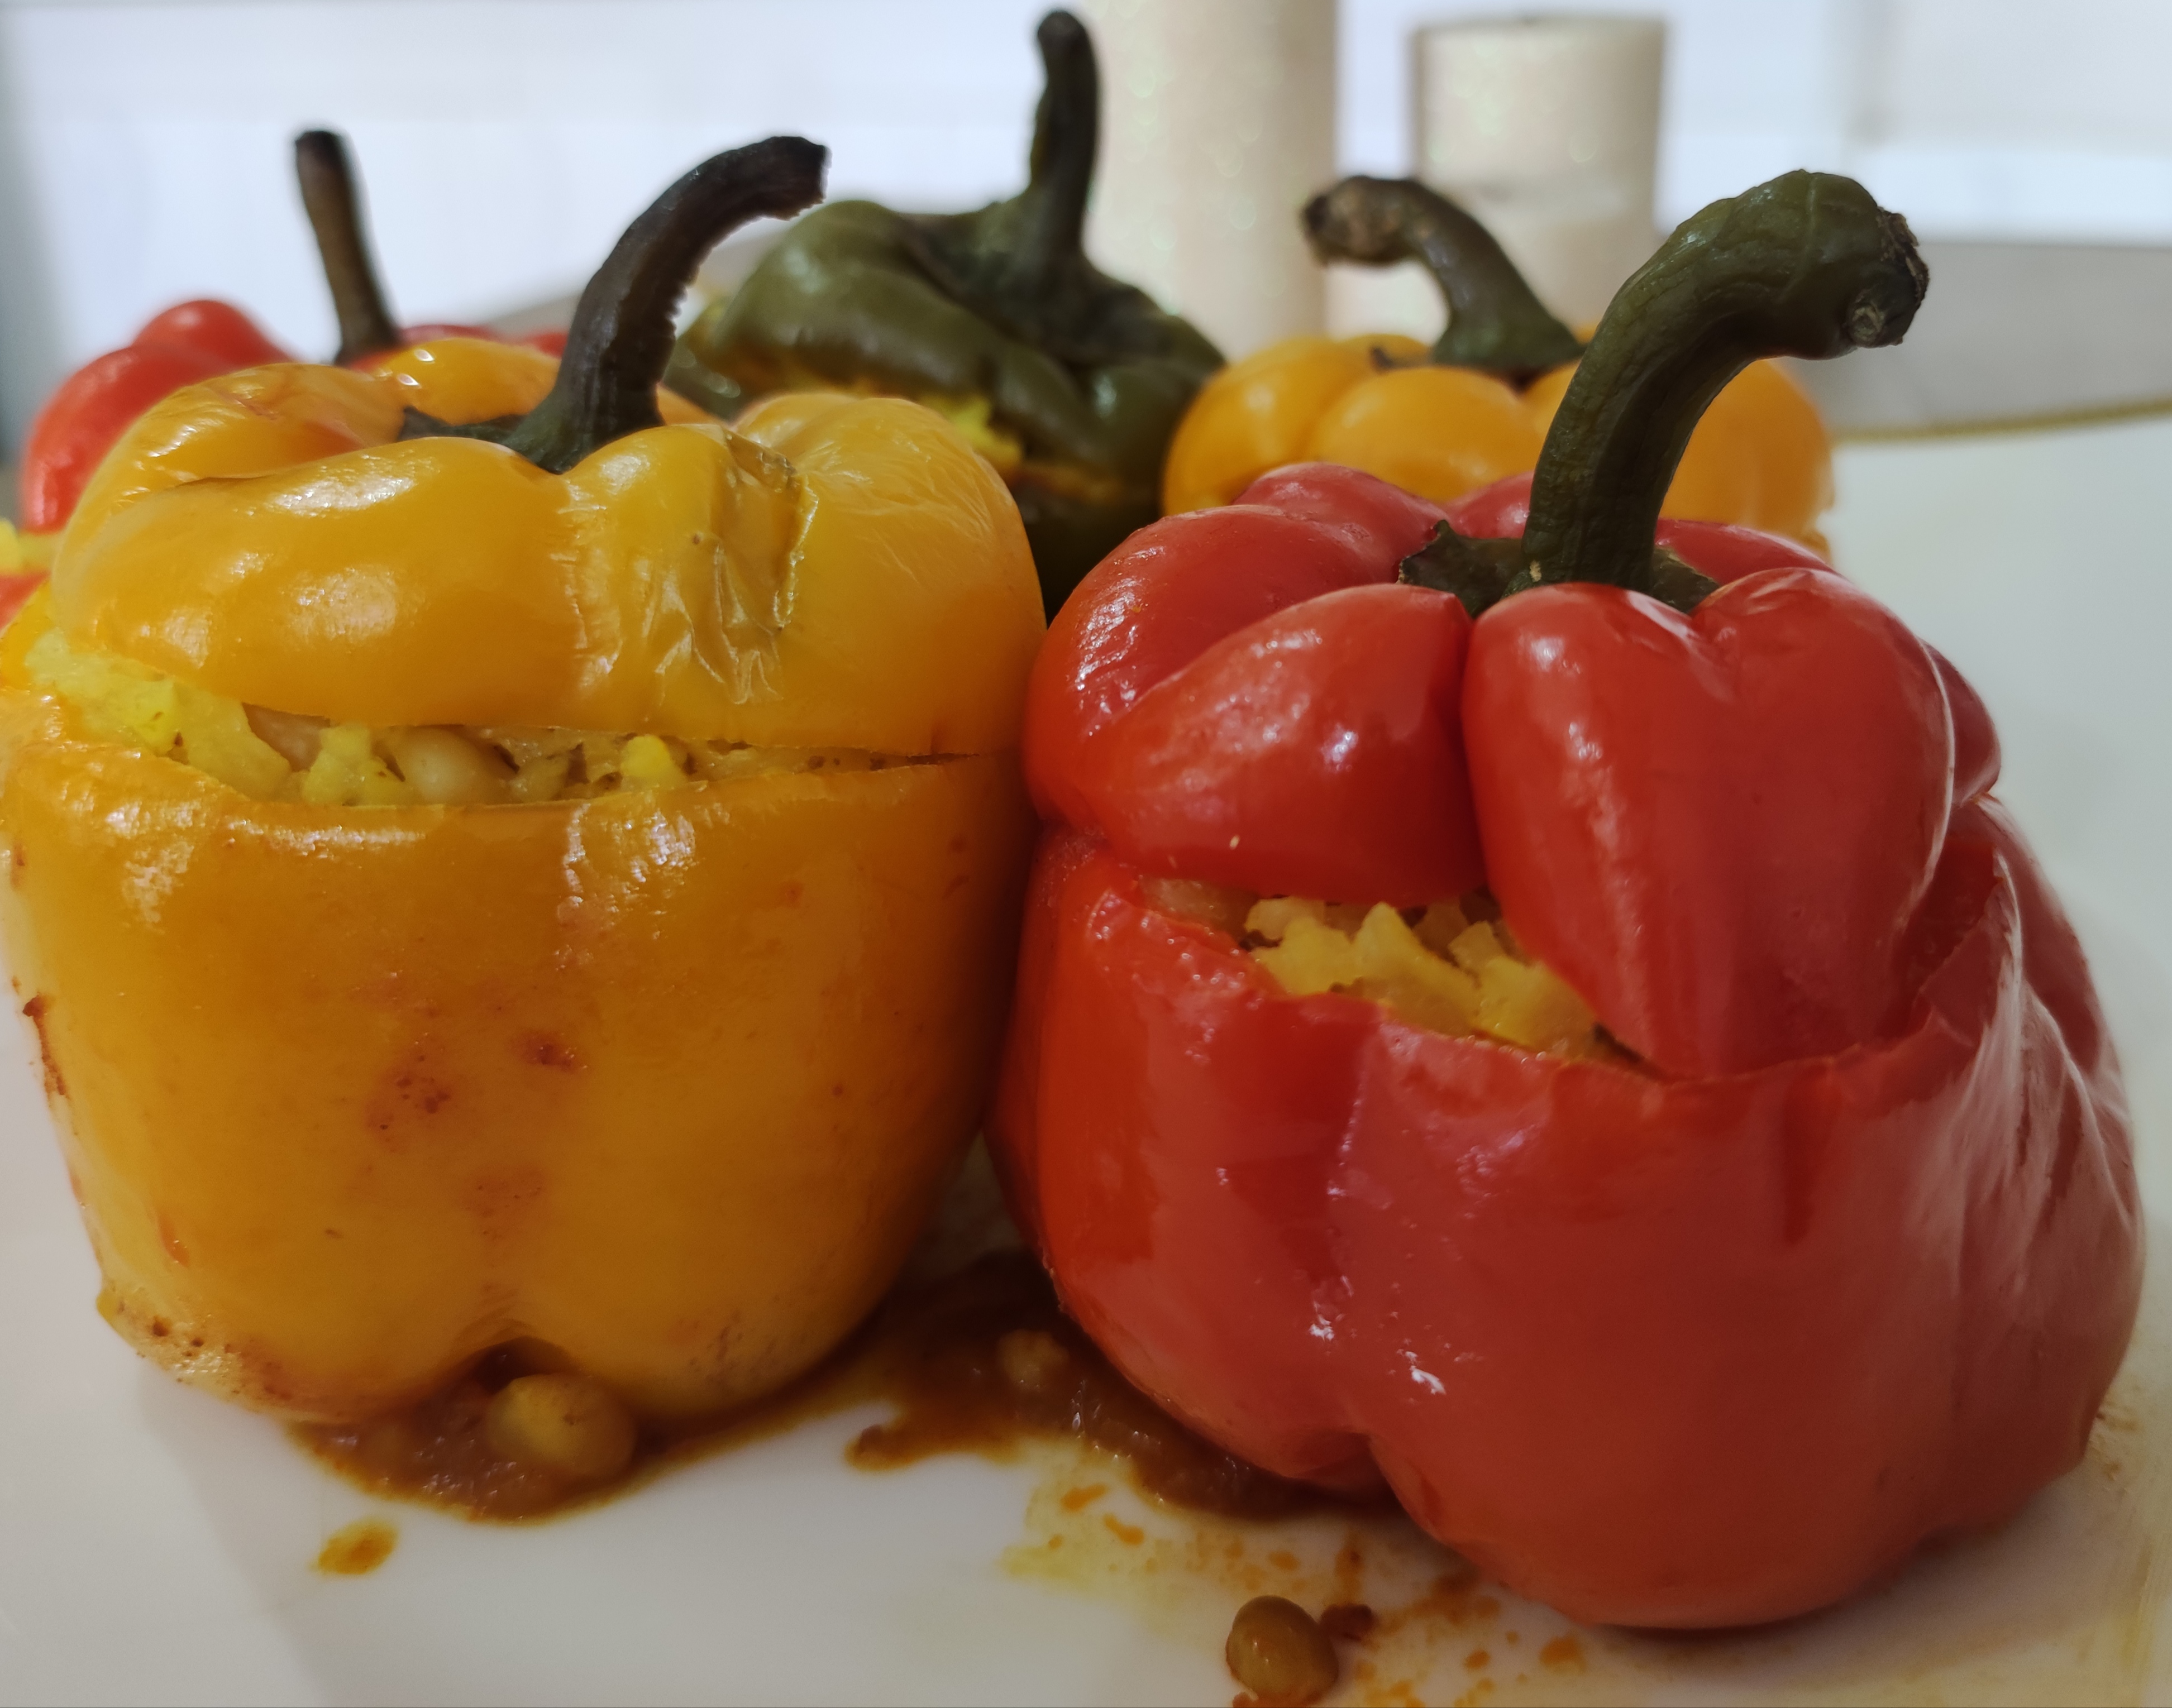 انواع دلمه های متداول ایرانی -  دلمه فلفل دلمه ای ( bell pepper ) - مقالات شماره 2751 تا 2780